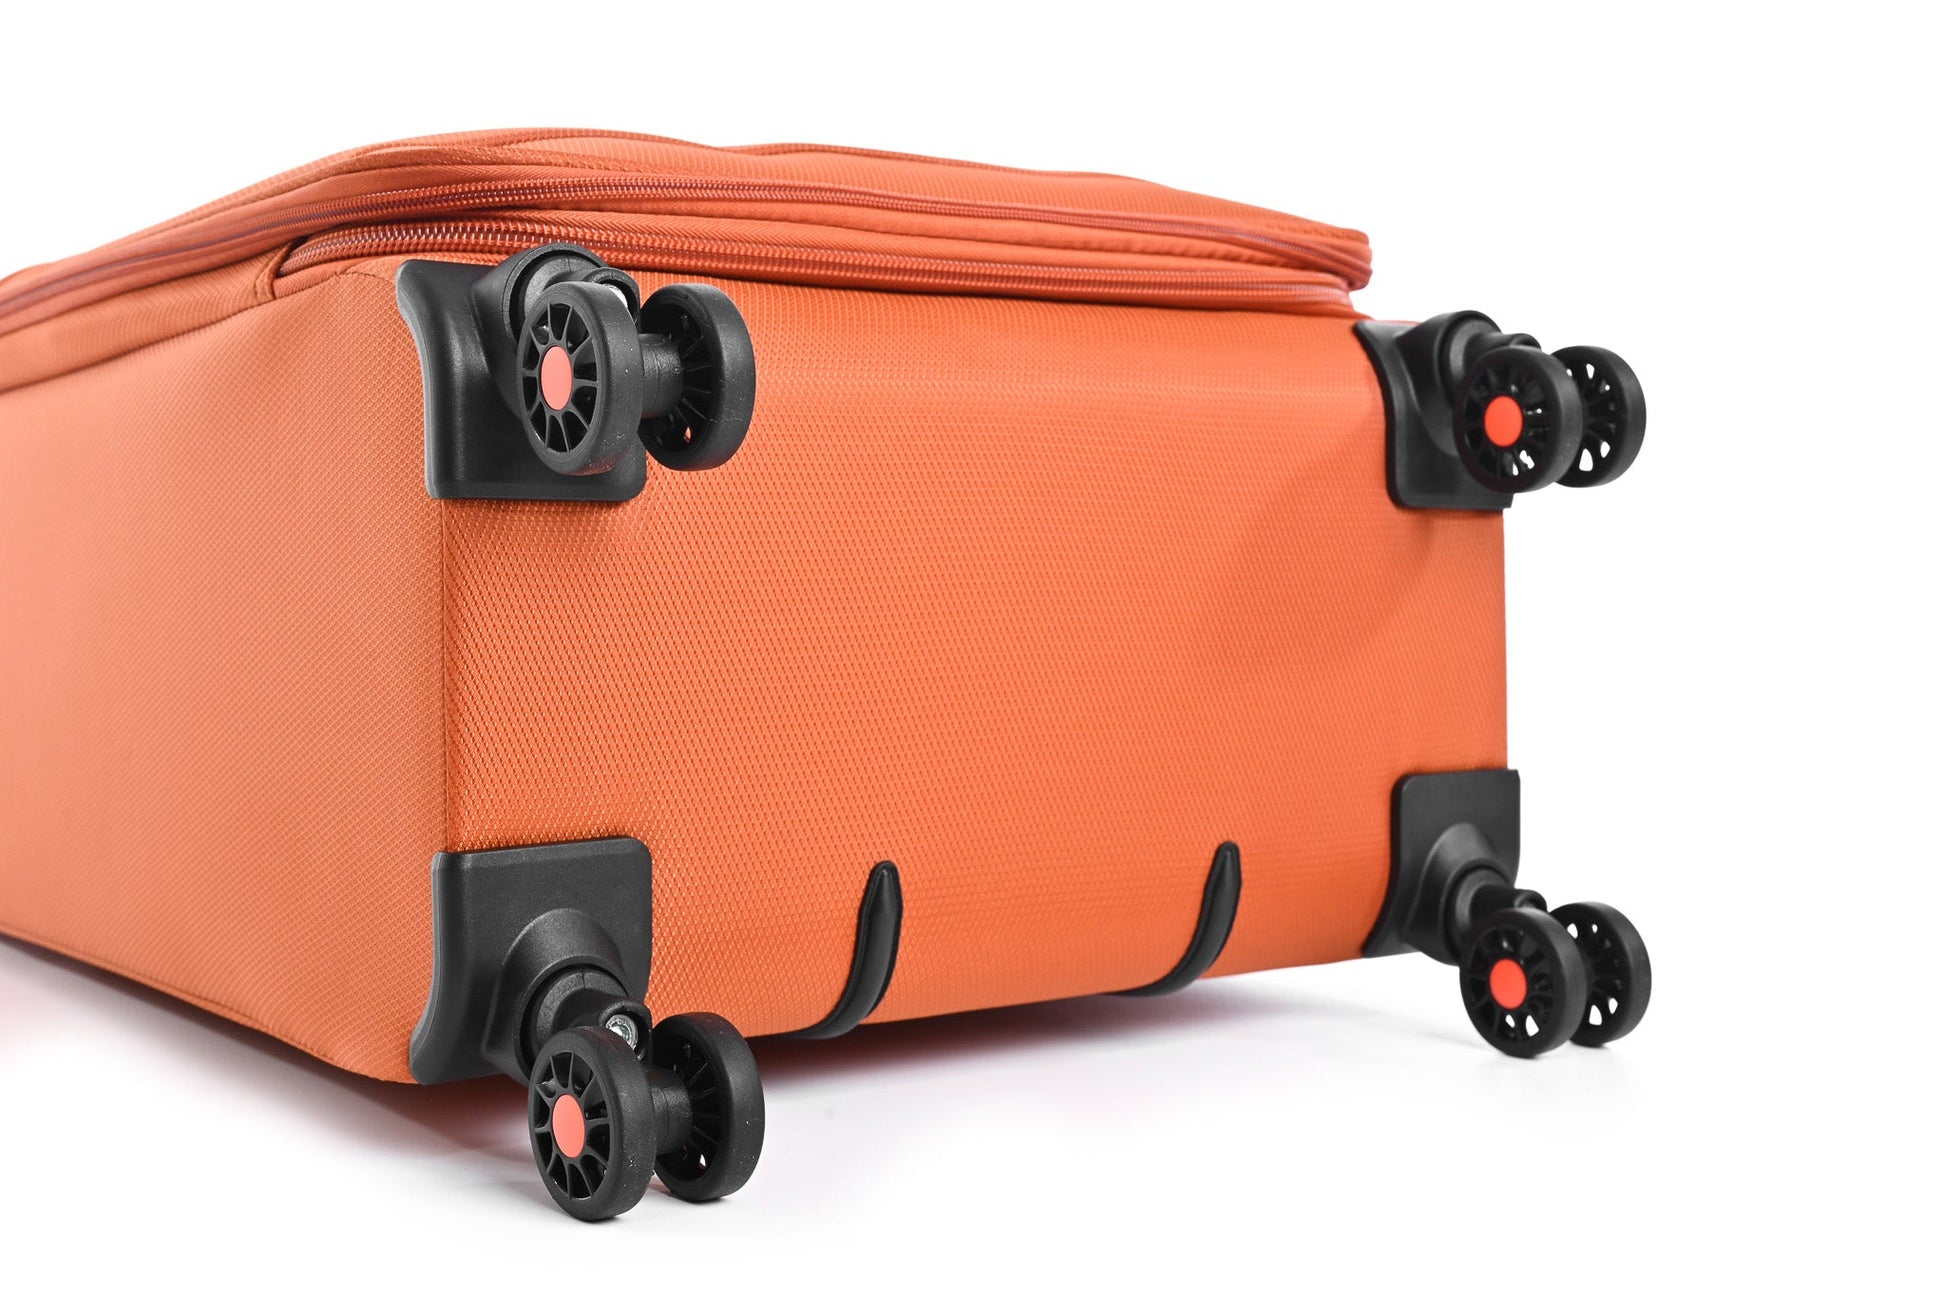 SLAZENGER - מזוודה מבד בינונית 23.5" דגם BARCELONA בצבע כתום - MASHBIR//365